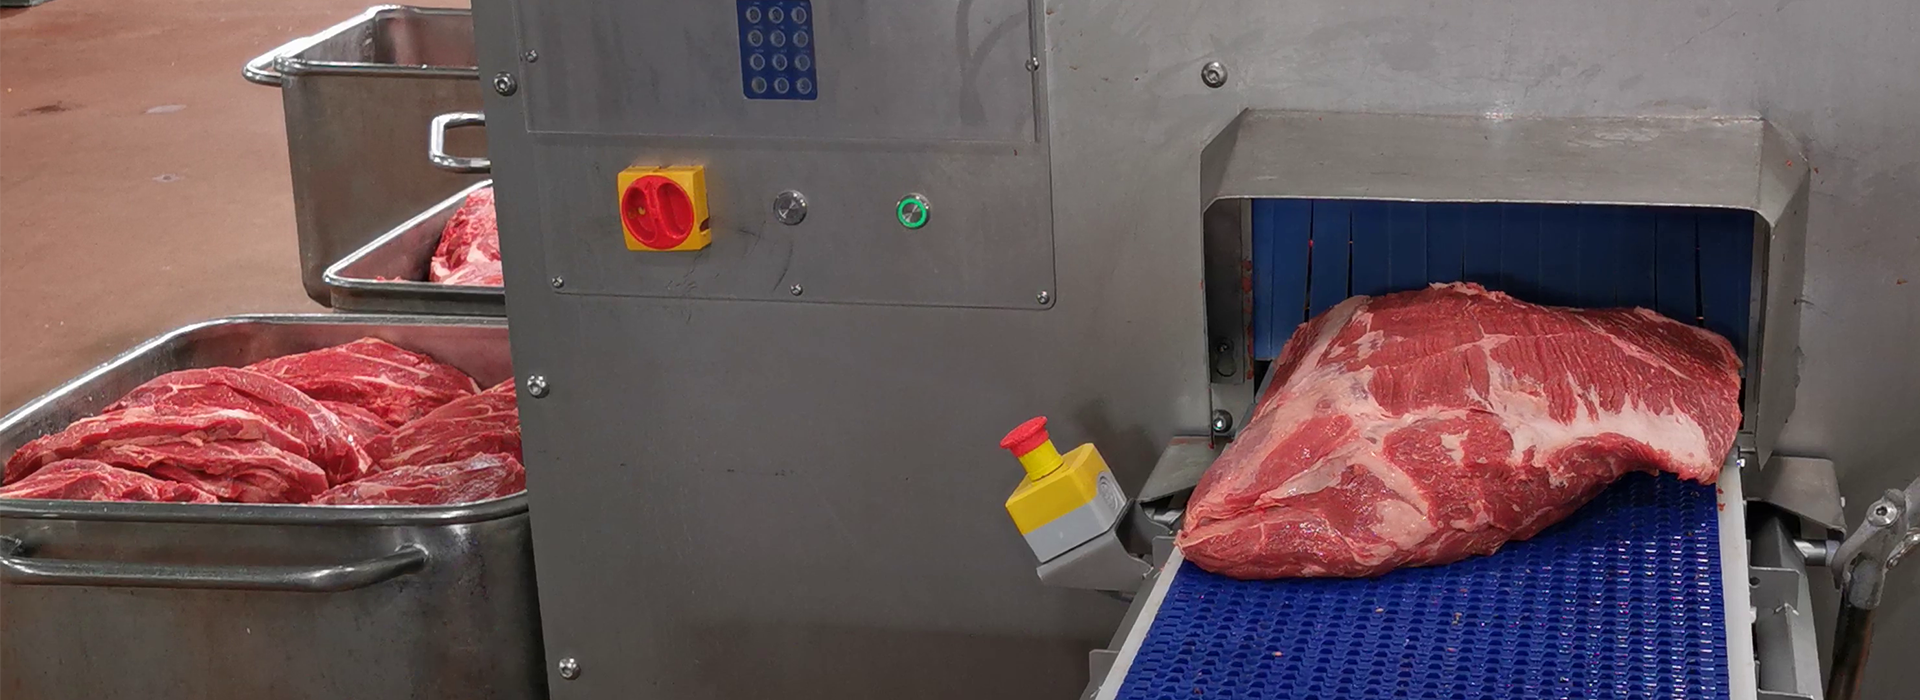 Portionsschneider PORTIO 3D zum Schneiden von Steaks, Roastbeef, Rib Eye, Filet, Schweinelende